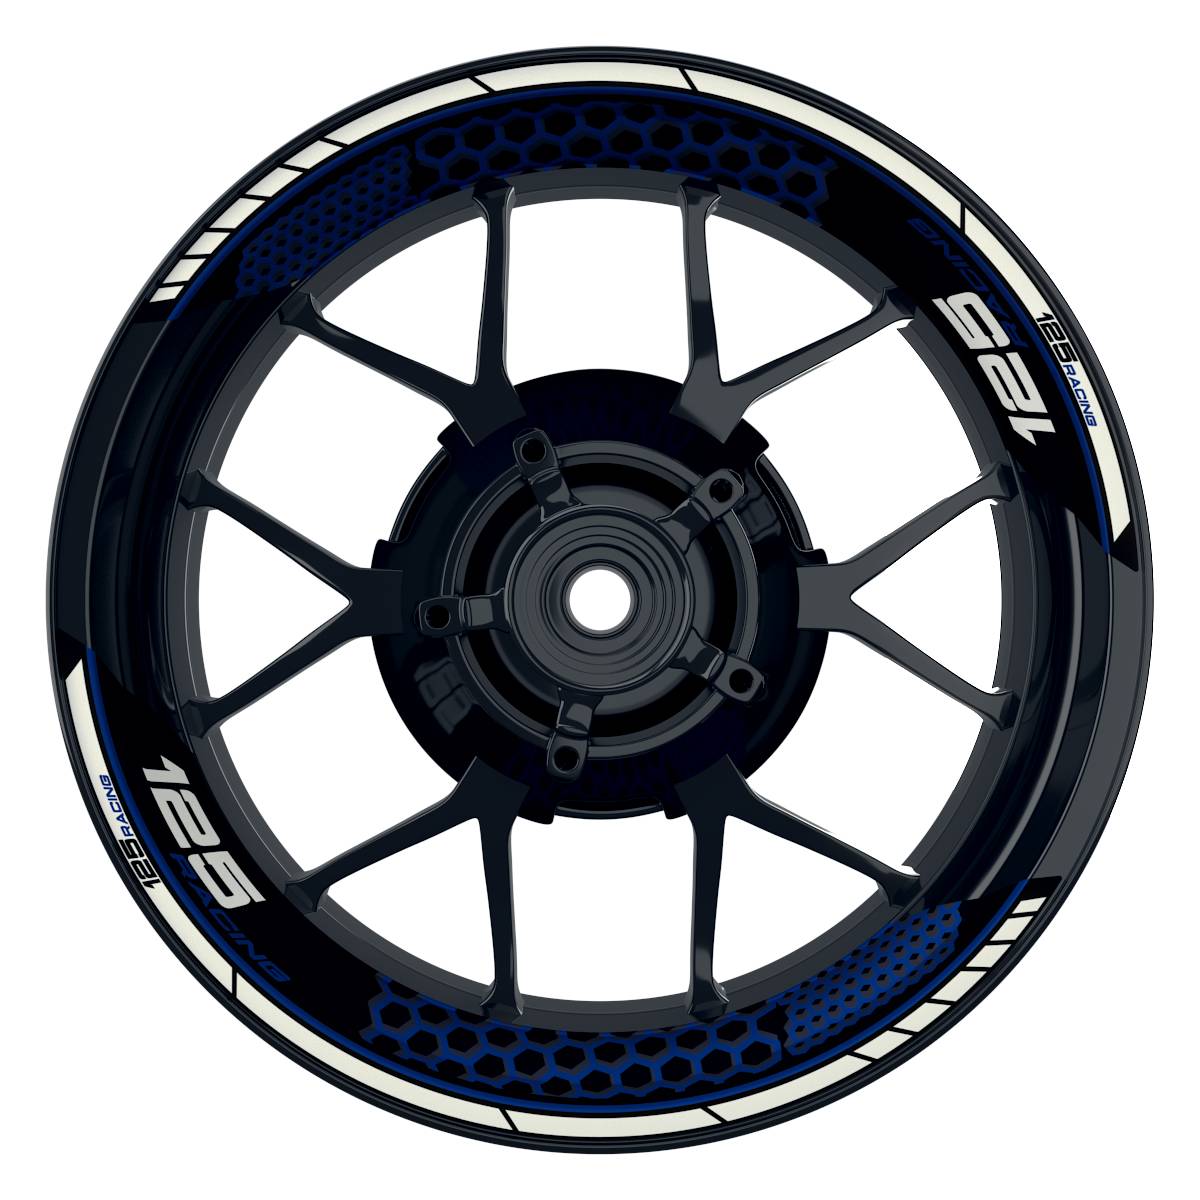 KTM Racing 125 Hexagon schwarz blau Frontansicht